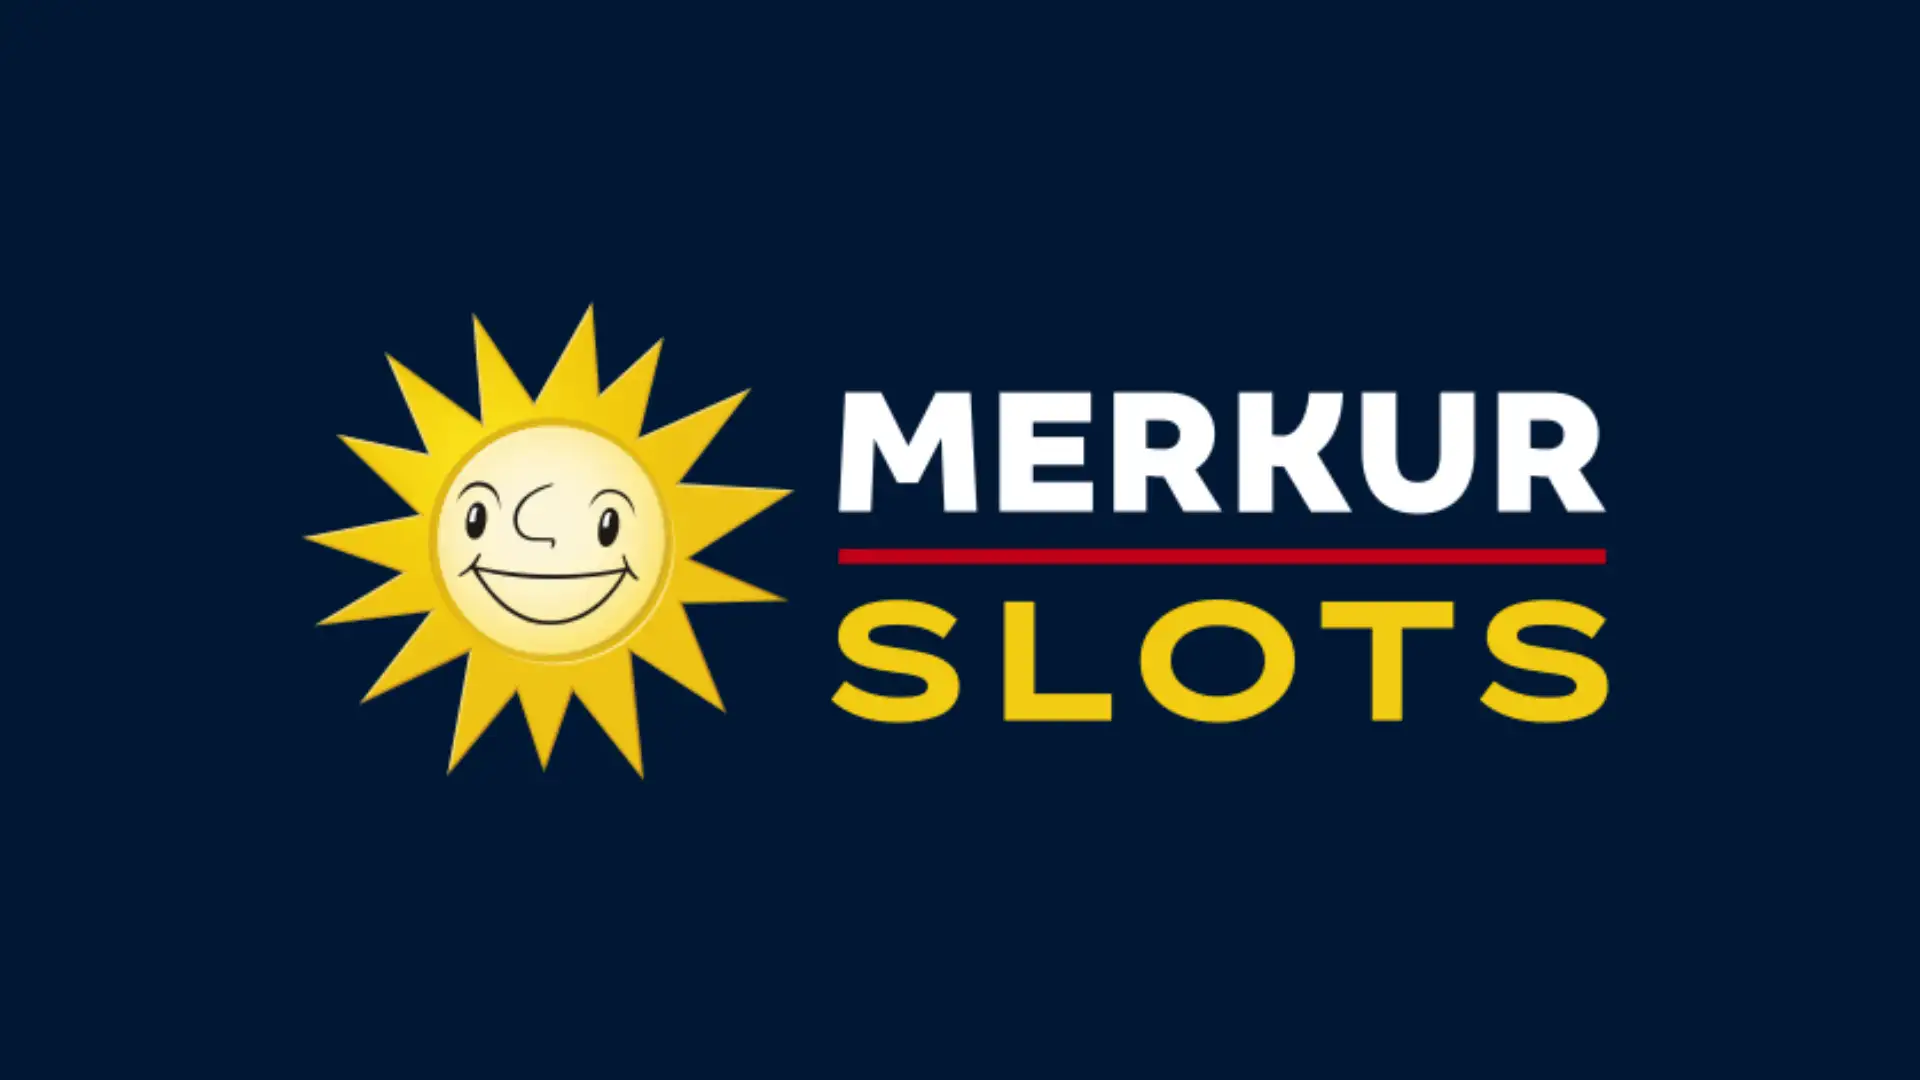 Logo-MERKUR-SLOTS-mitHintergrund